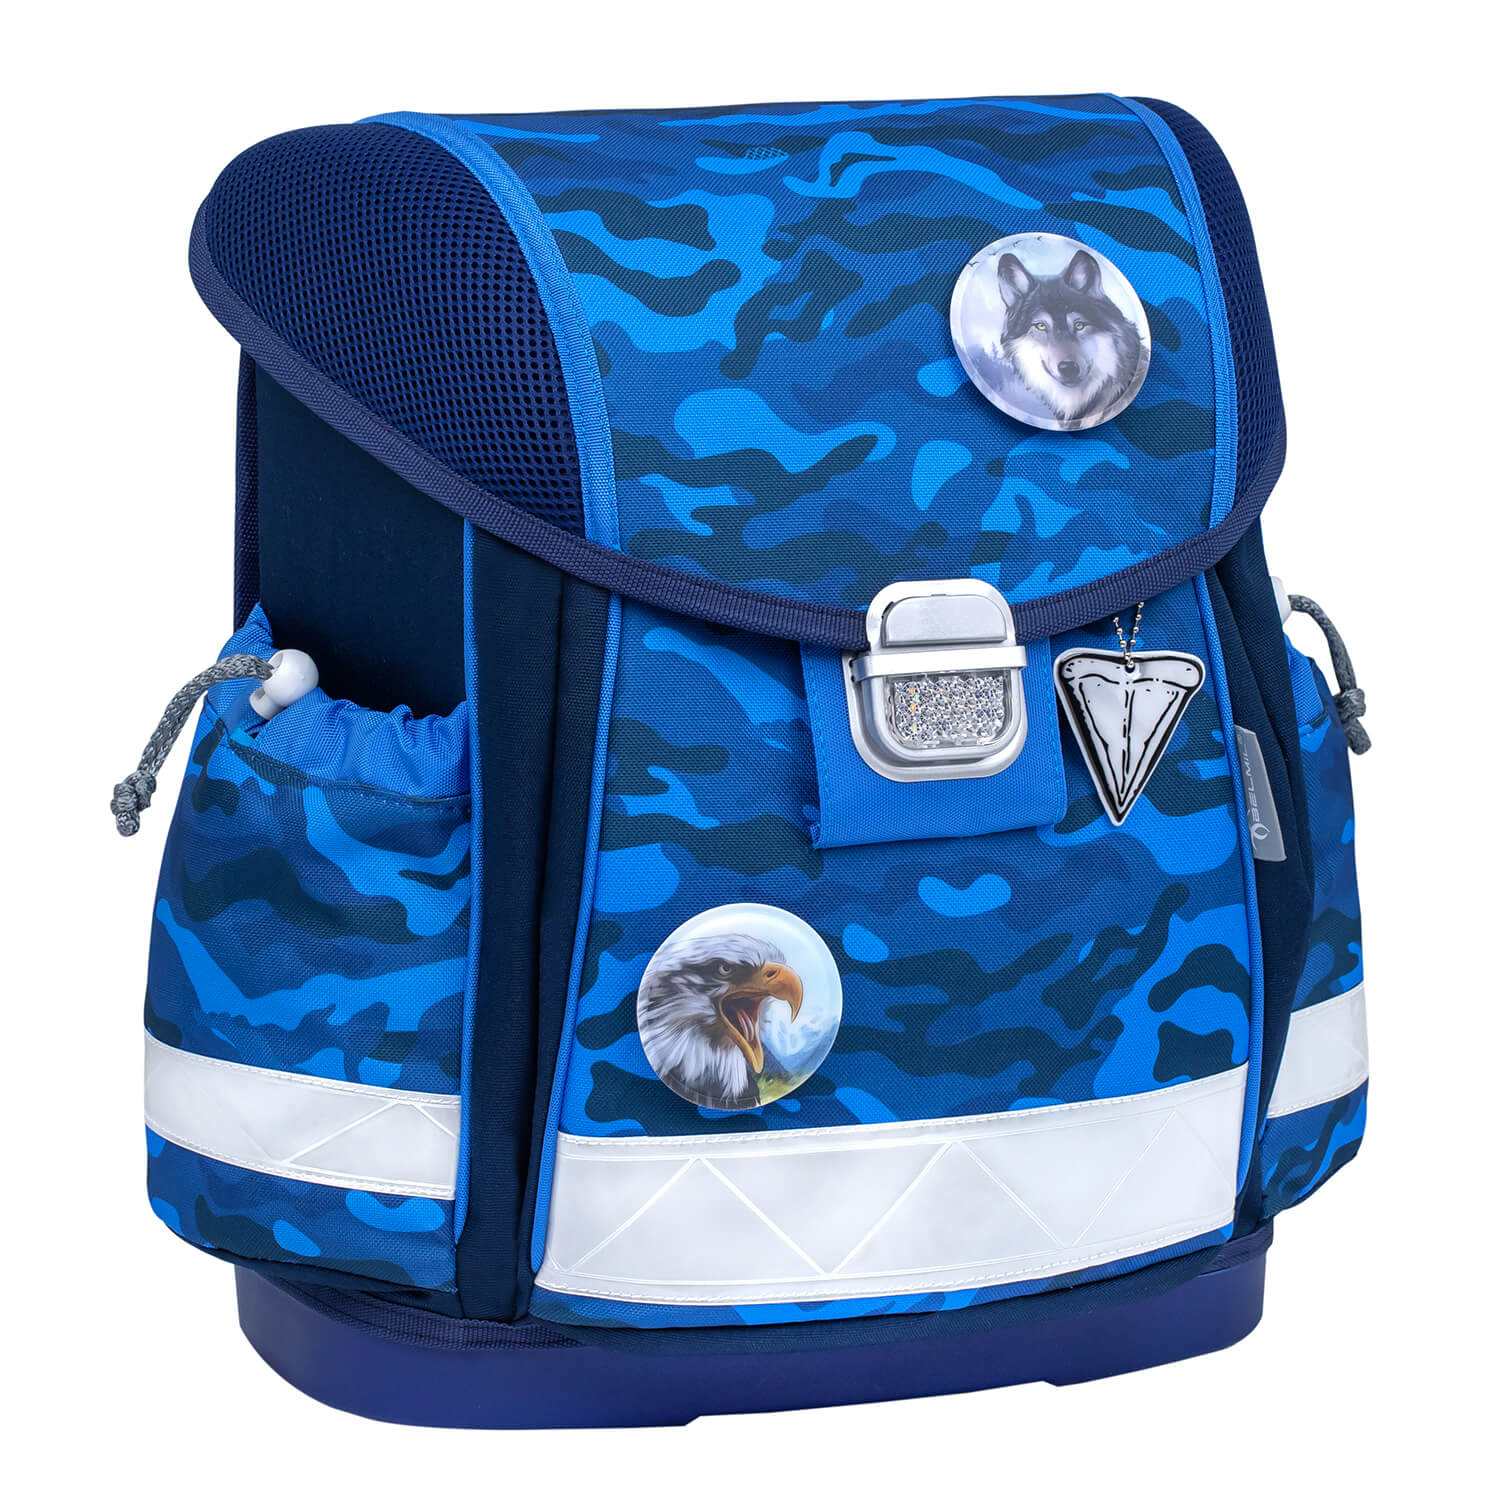 Classy Blue Camouflage schoolbag set 6 pcs with GRATIS Patch set